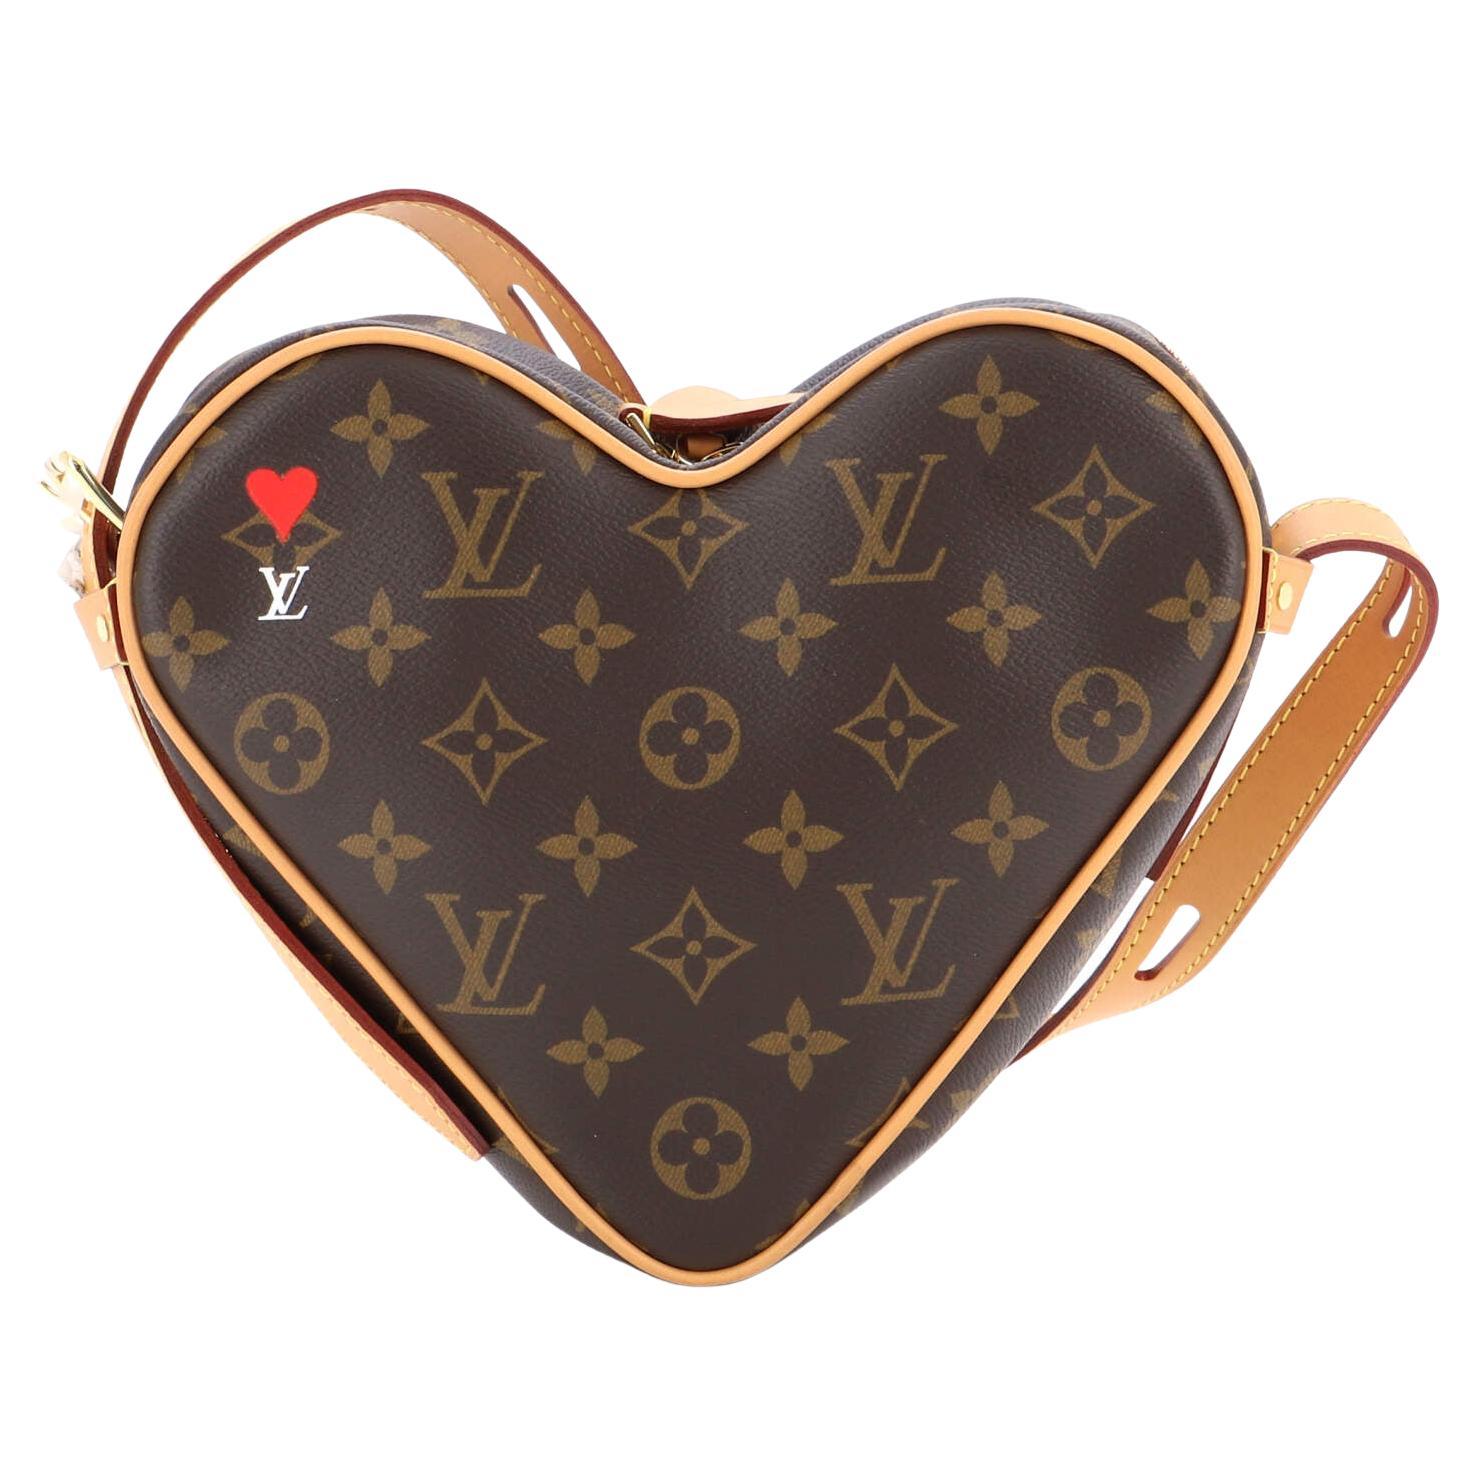 Louis Vuitton x Lol League of Legends Limited Boite Chapeau Souple Bag 46lk62s